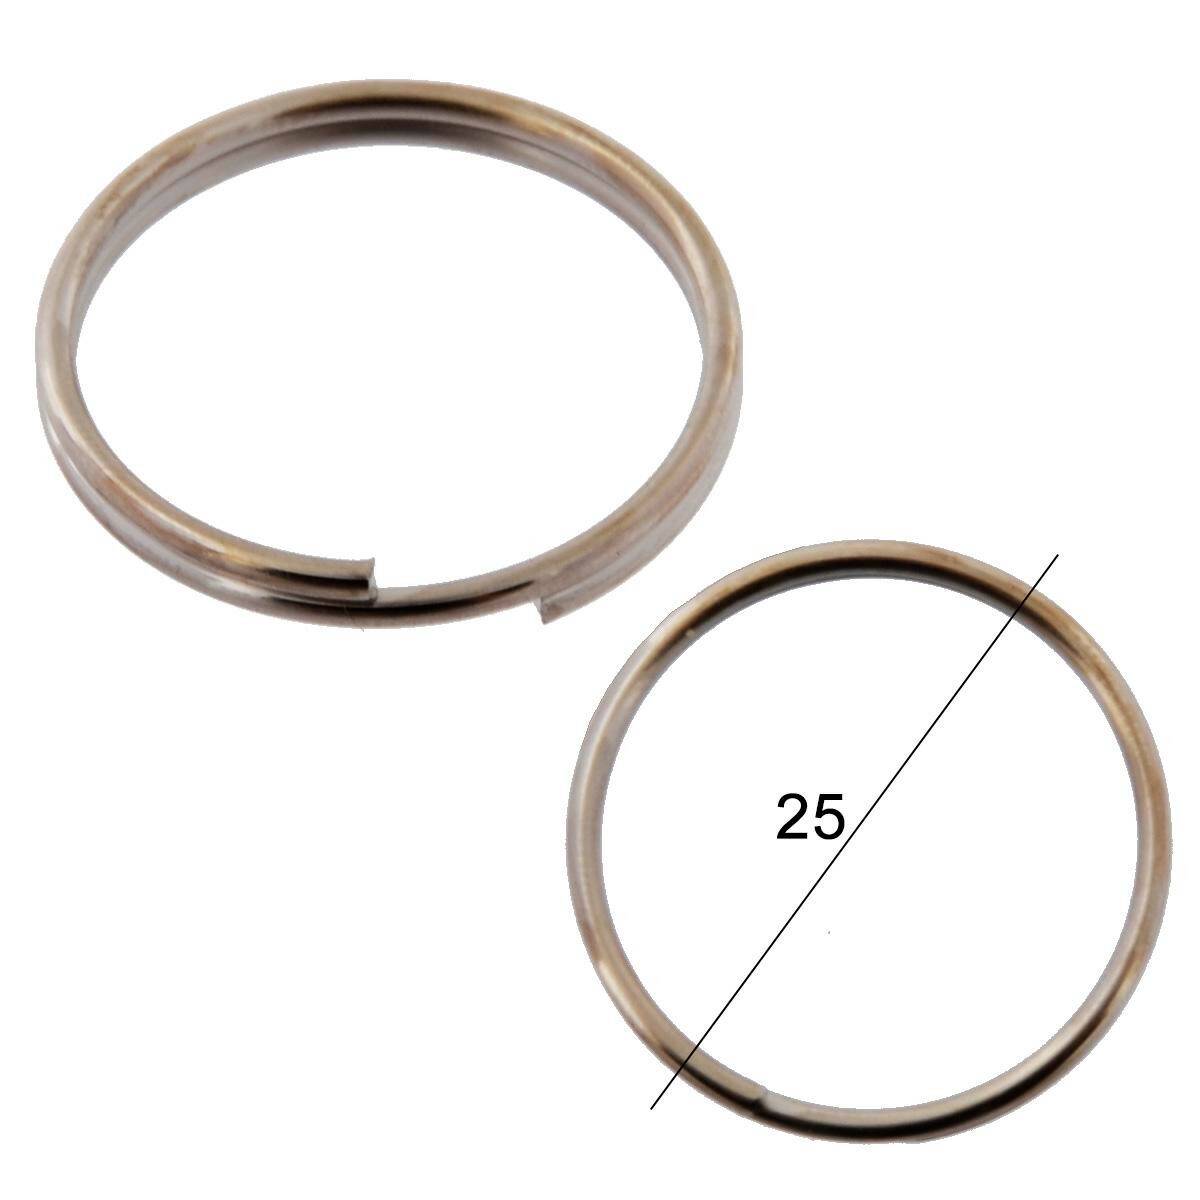 Key rings for keys WIS normal diameter 25mm